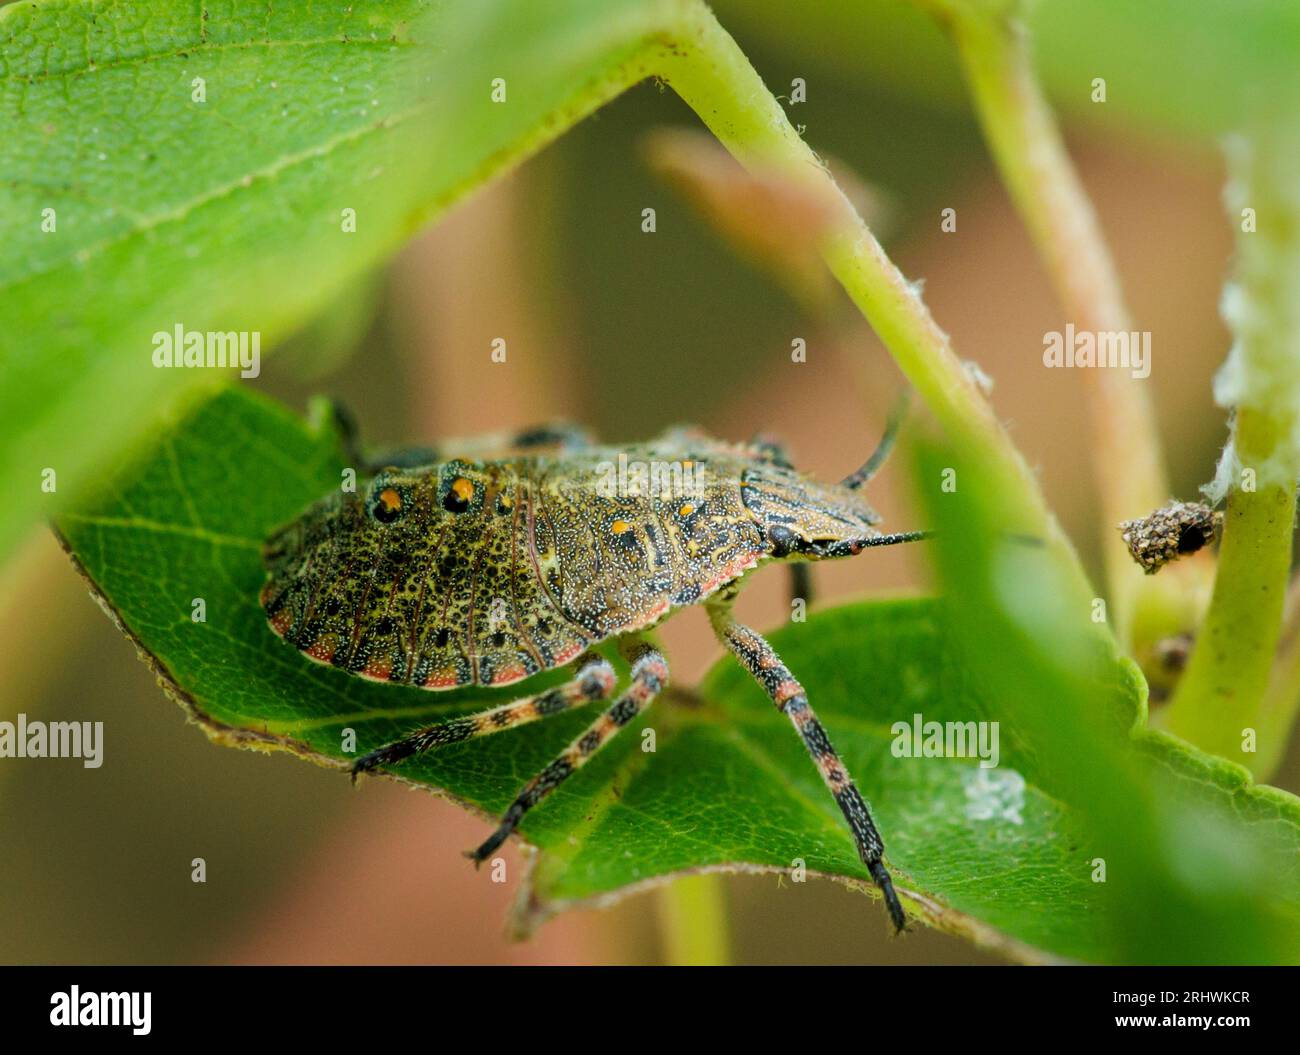 Un insecto apestoso se sienta en la sombra creada por las hojas de un árbol de arce. Foto de stock